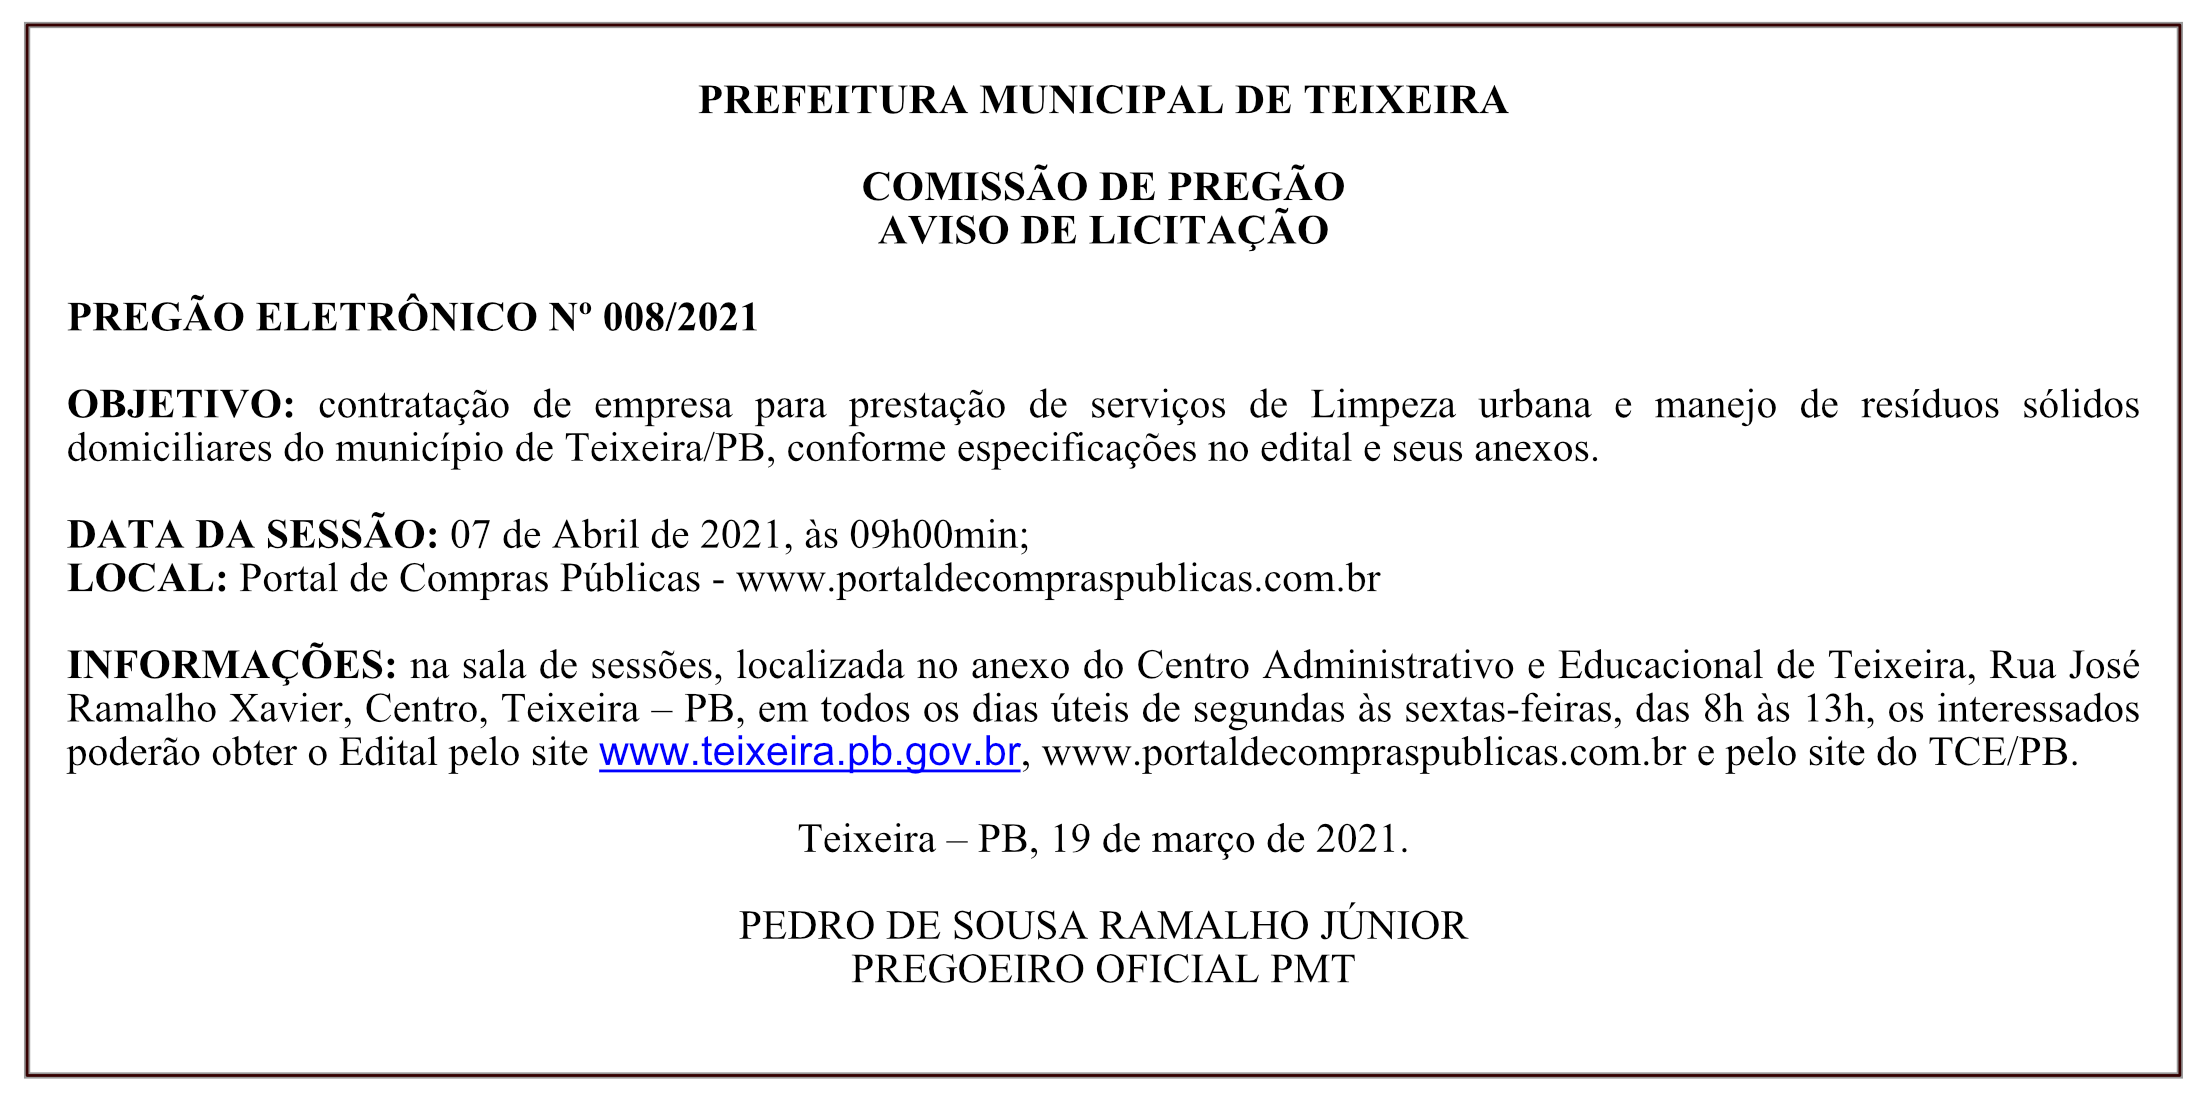 PREFEITURA MUNICIPAL DE TEIXEIRA – COMISSÃO DE PREGÃO – AVISO DE LICITAÇÃO – PREGÃO ELETRÔNICO Nº 008/2021